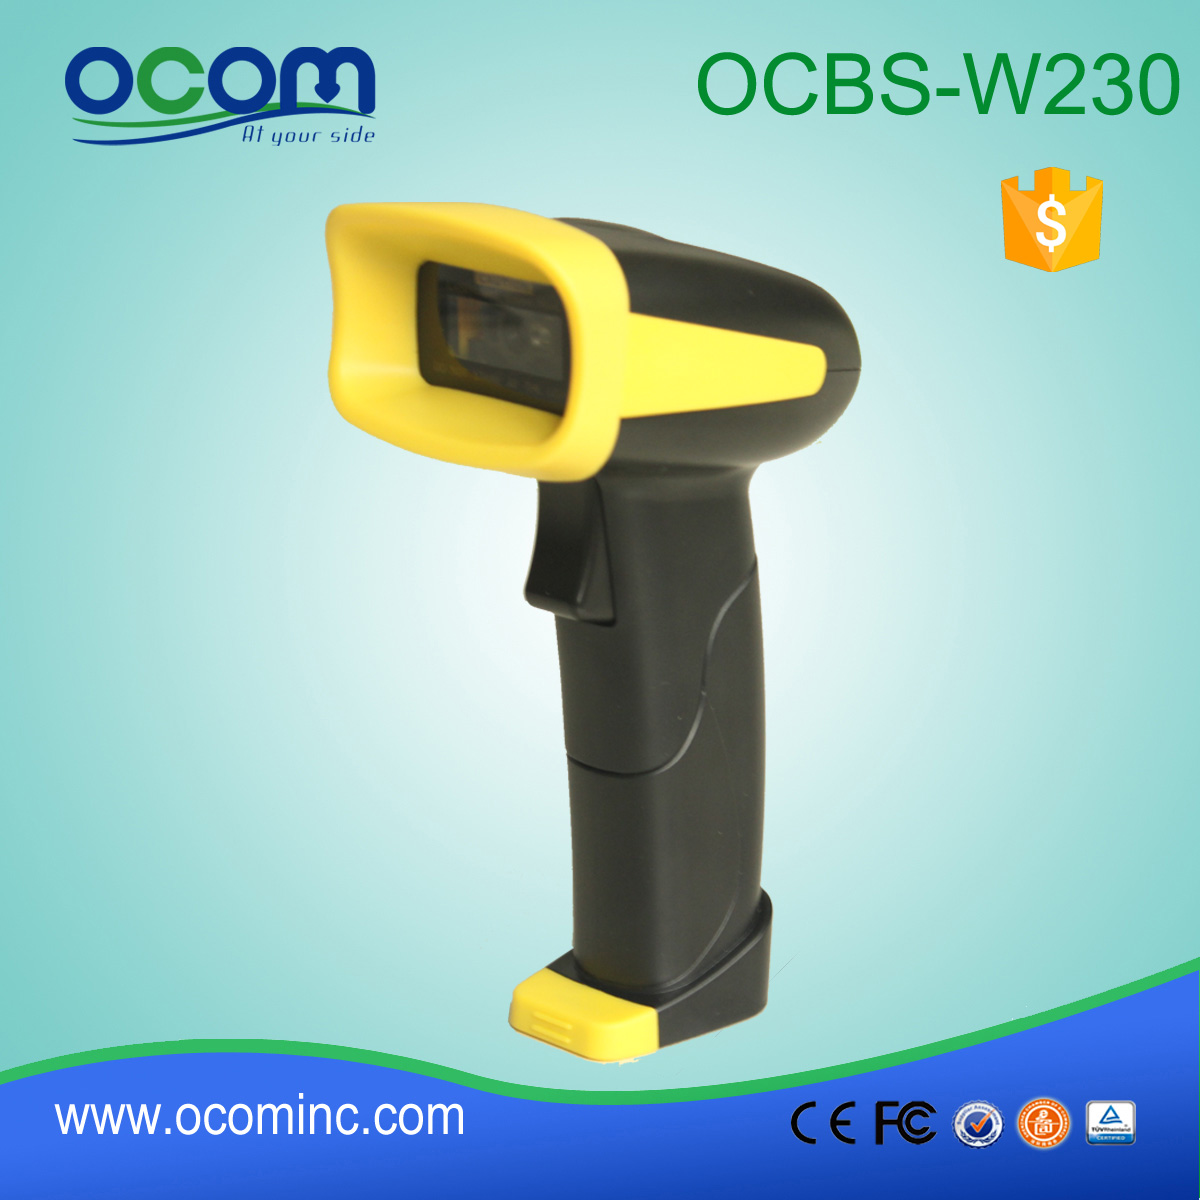 OCBS-W230: szybkie łącze Bluetooth bezprzewodowe przenośny skaner kodów kreskowych 2D